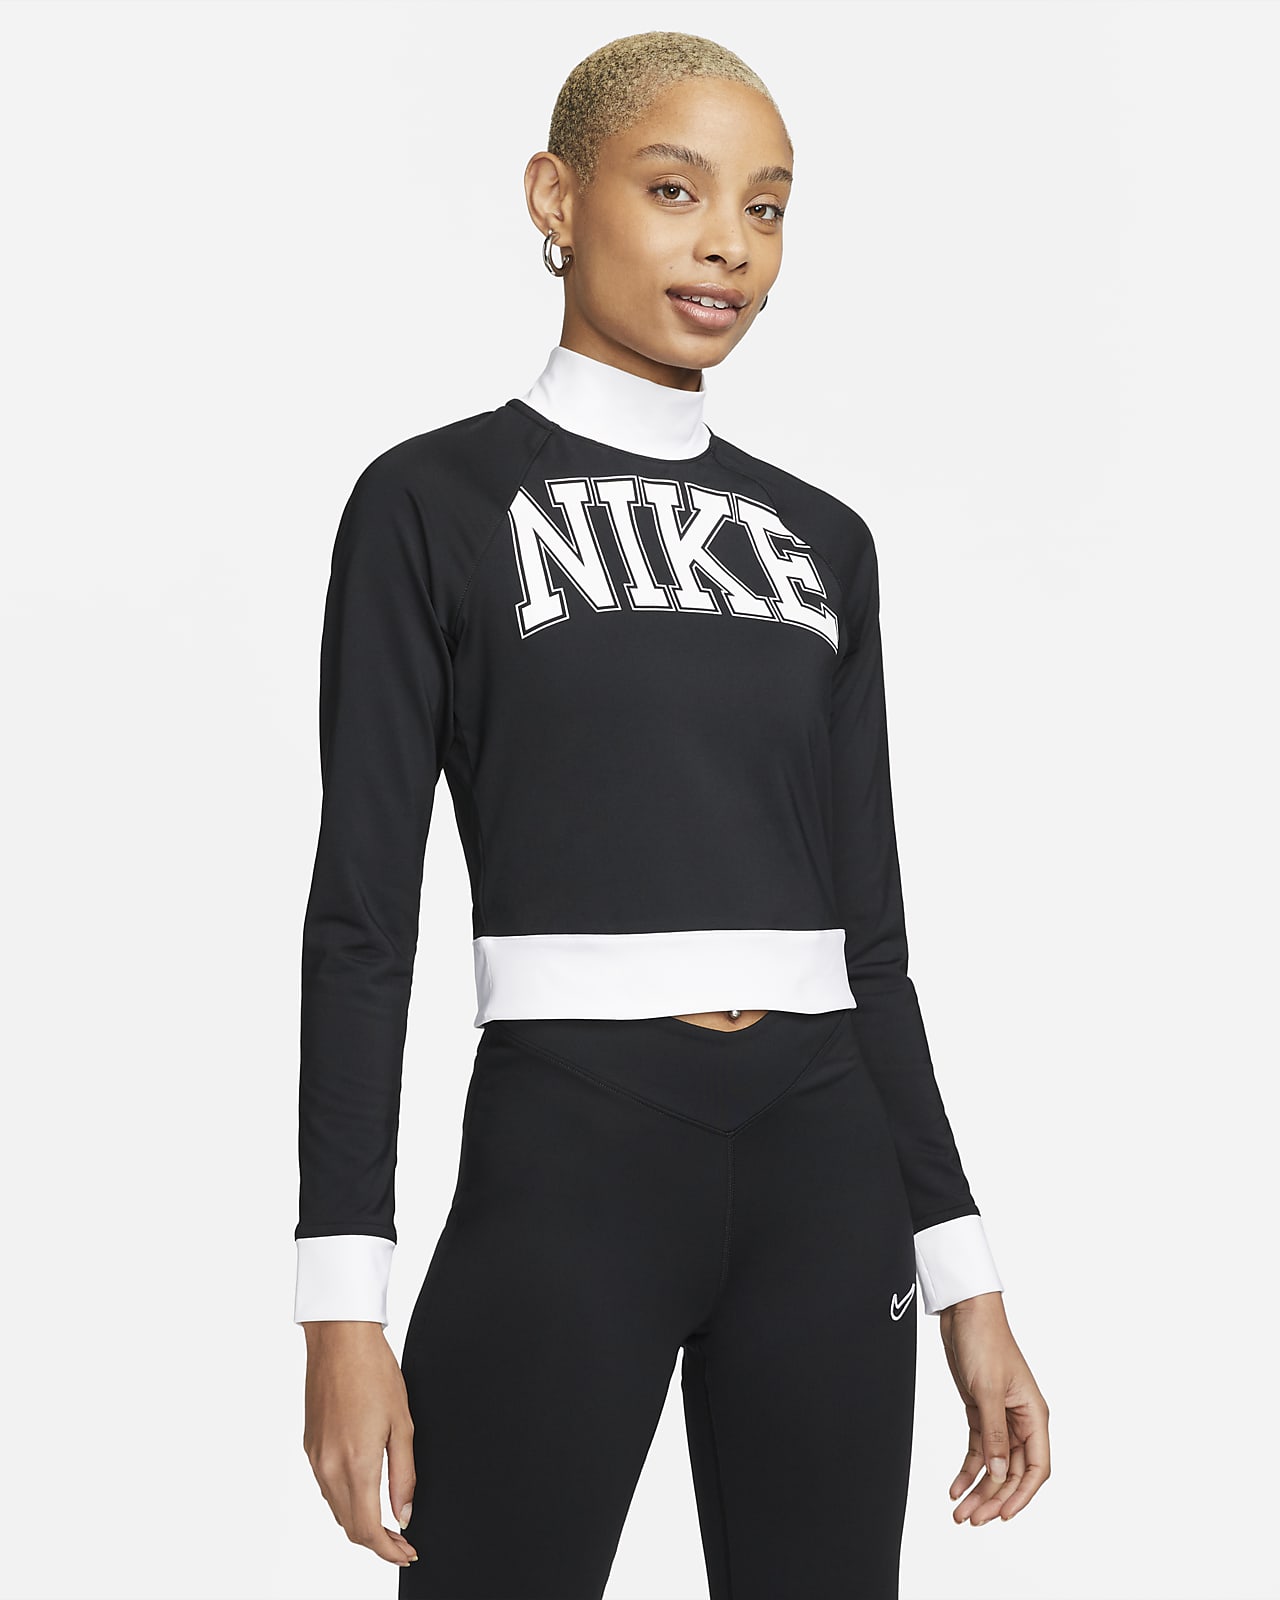 Sportswear Team Nike Long-Sleeve Top.